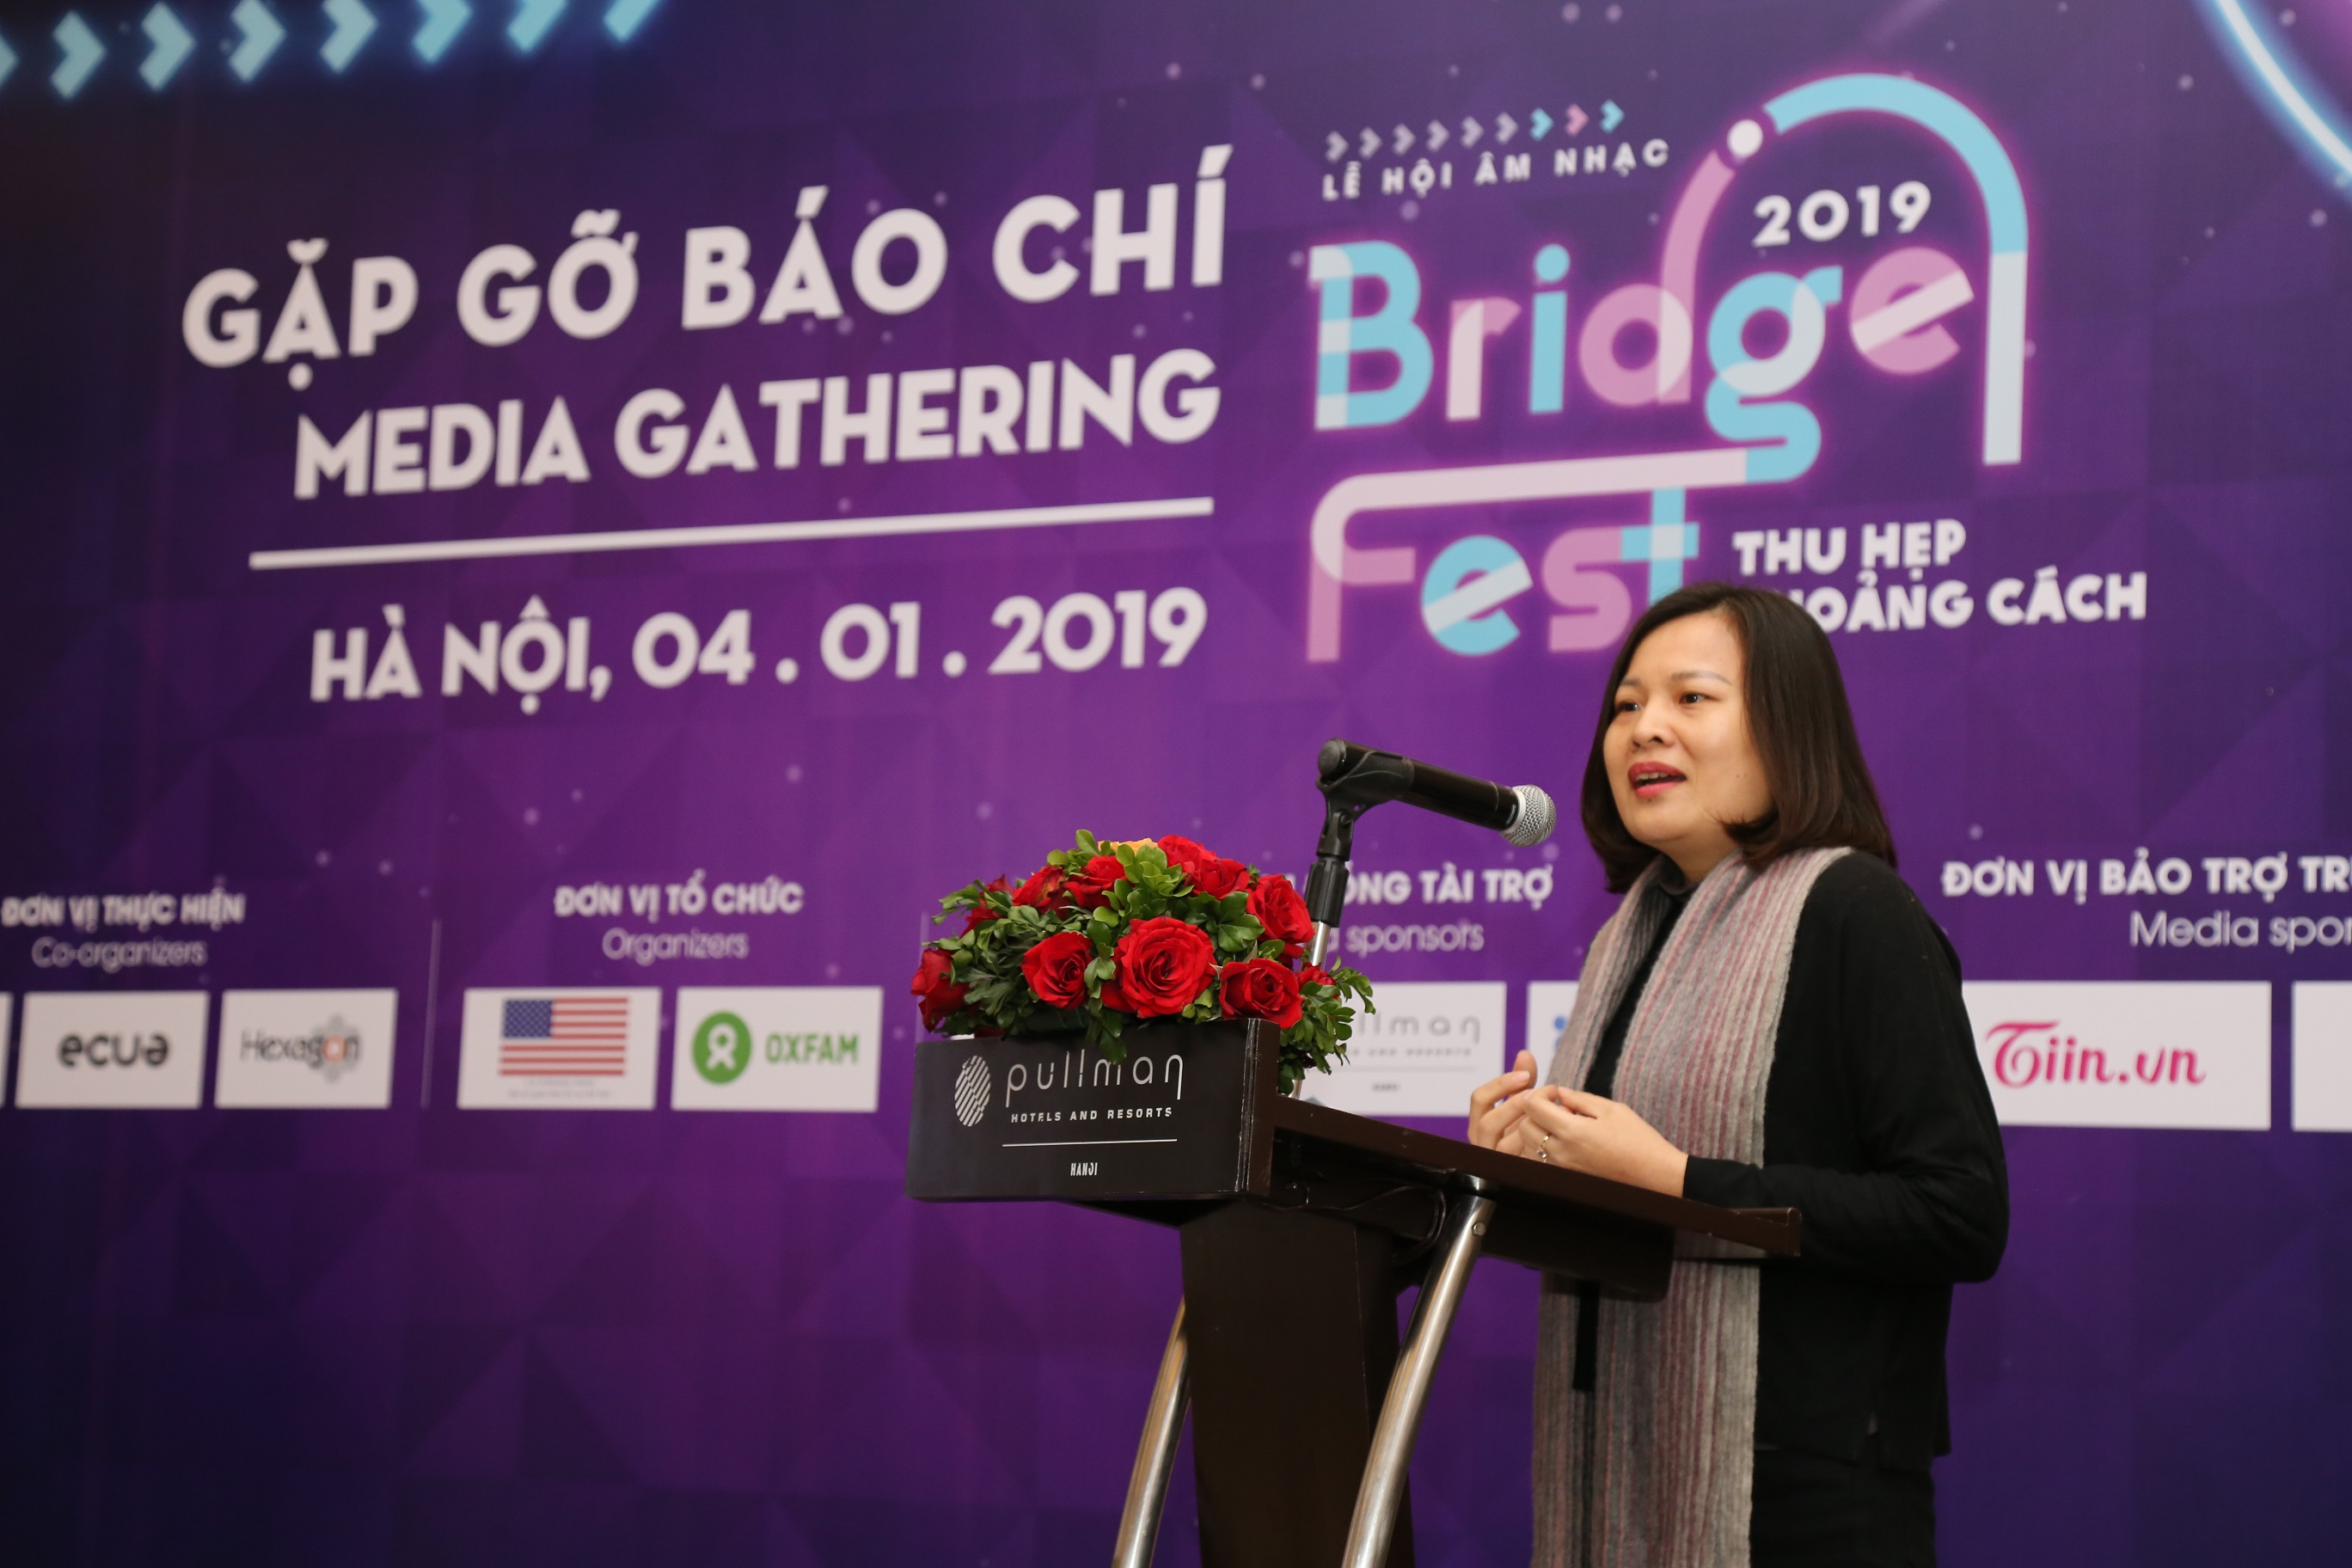 1-b-v-th-qunh-hoa-i-din-oxfam-chia-s-v-bridgefest-2019-v-chin-dch-thu-hp-khong-cch.JPG